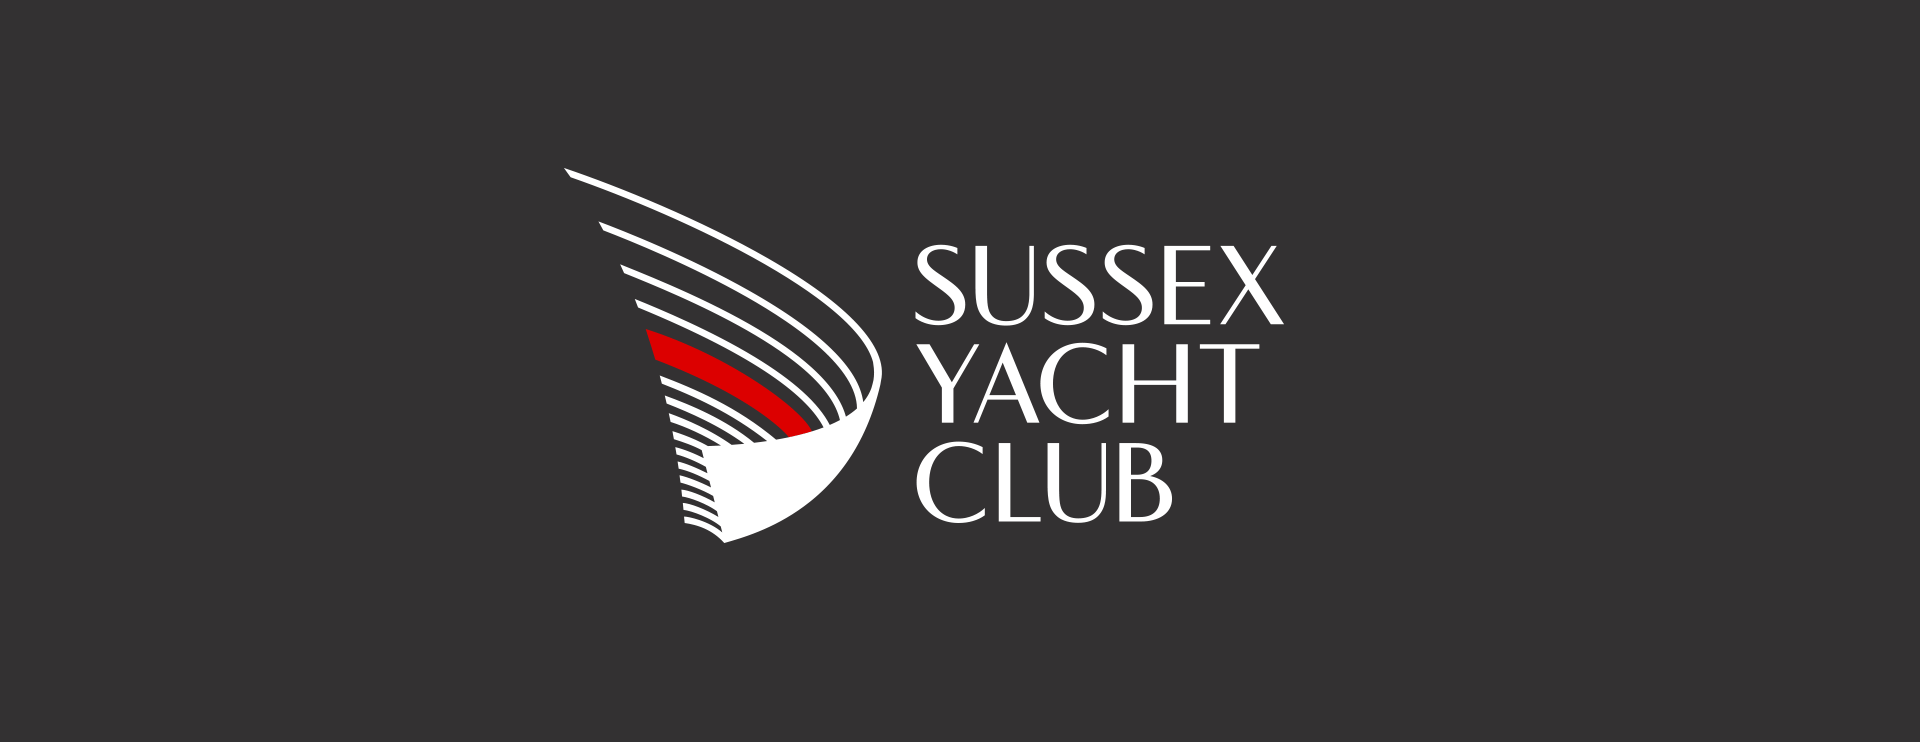 sussex yacht club logo